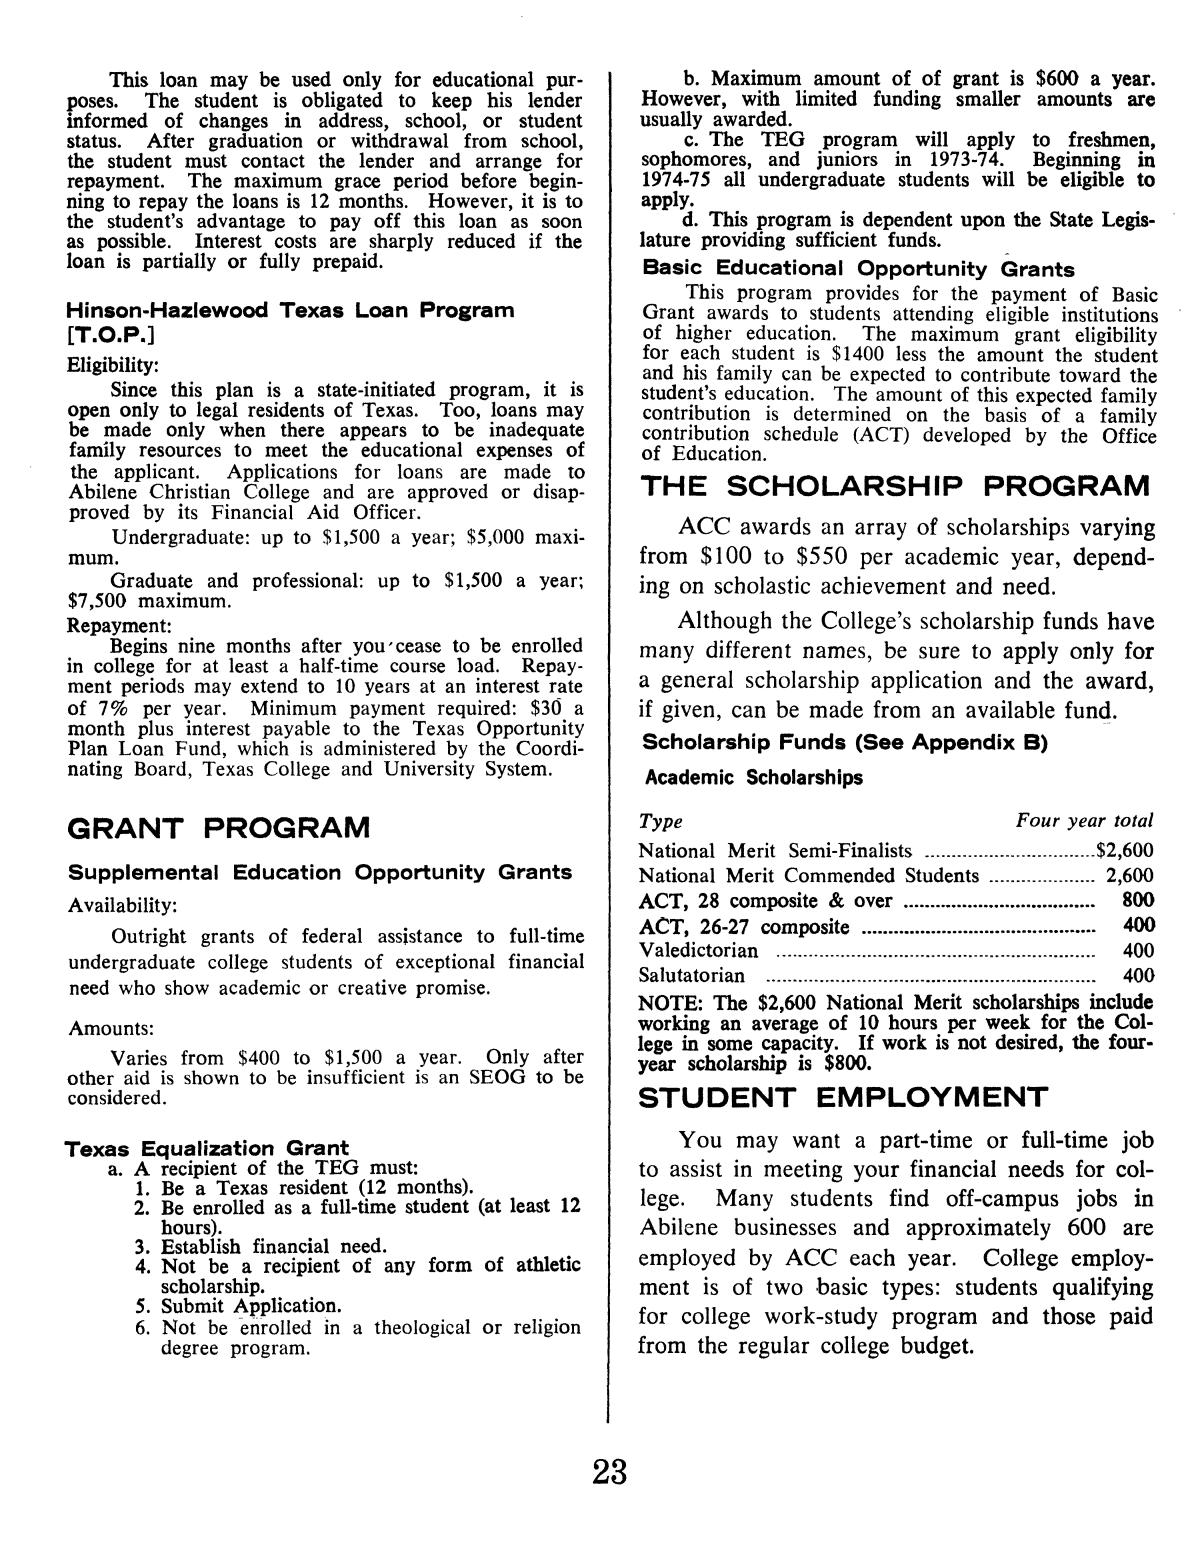 Catalog of Abilene Christian College, 1974-1975
                                                
                                                    23
                                                